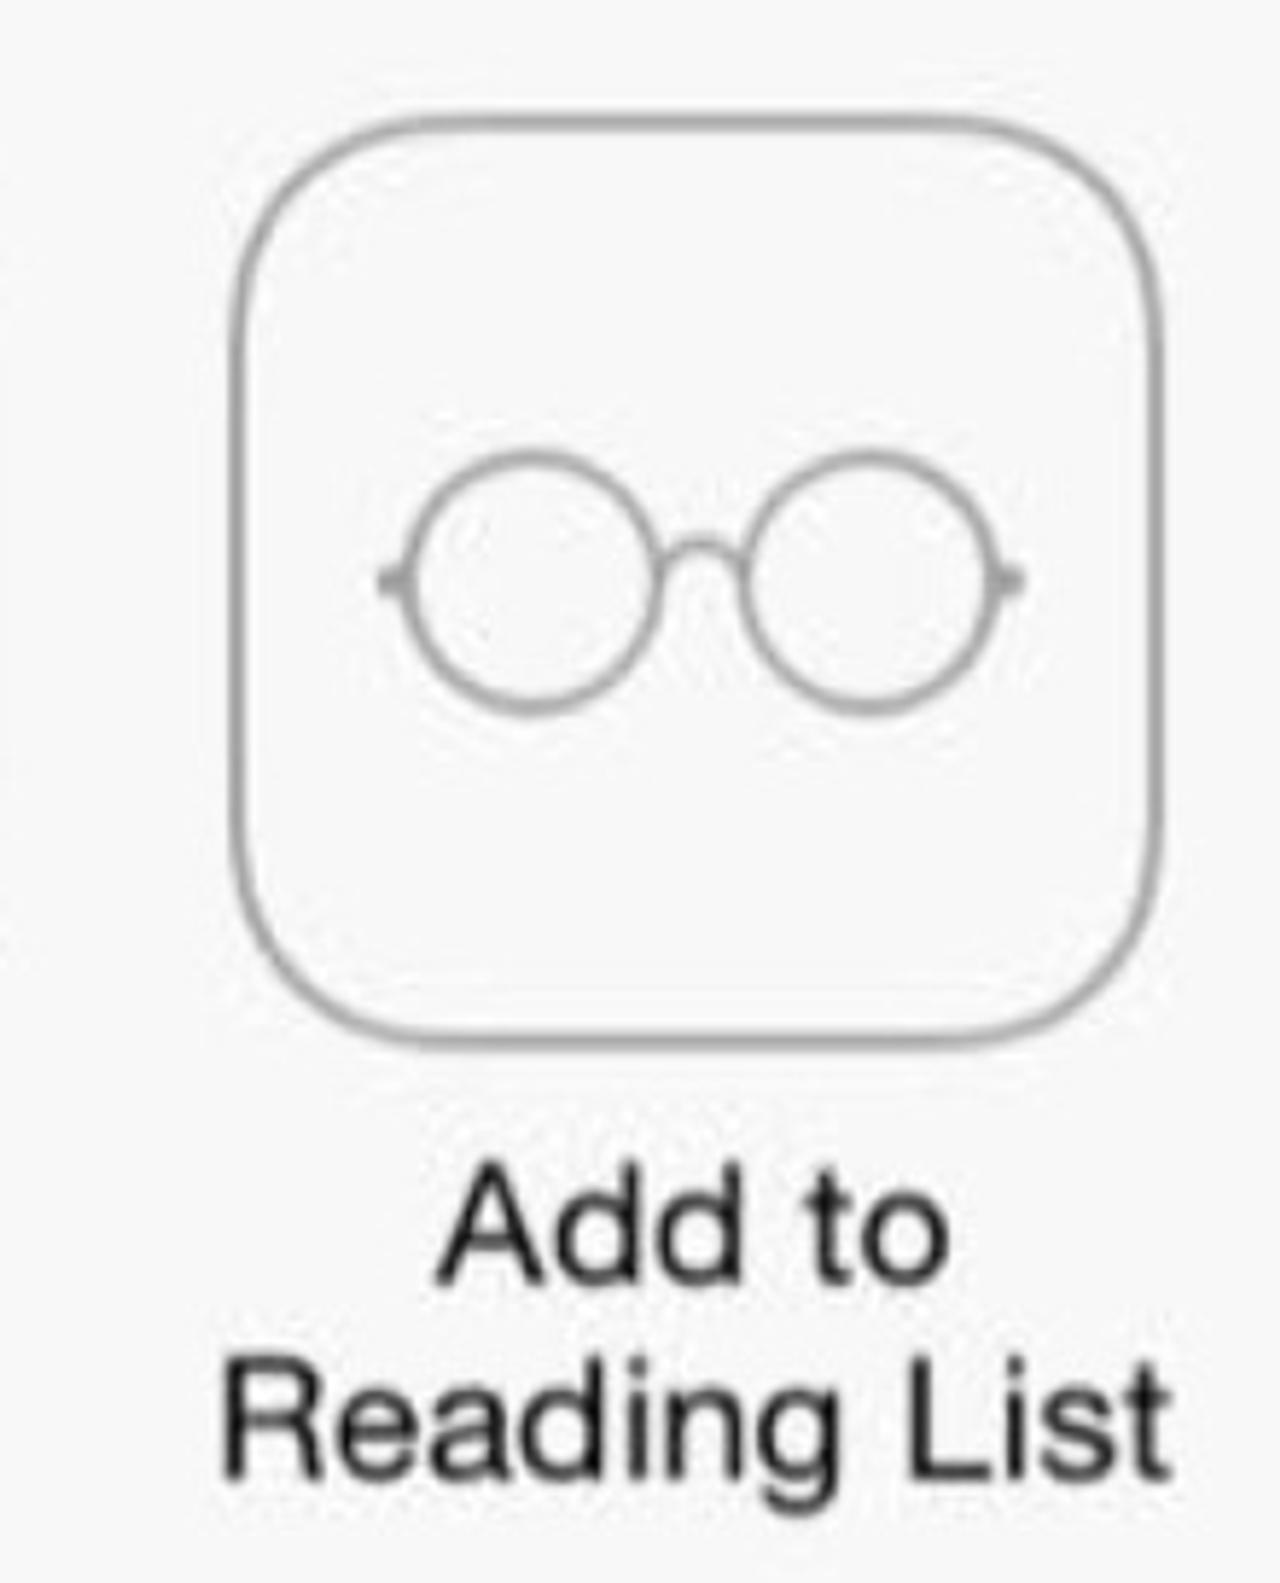 iOS 7の新しいリーディングリストのアイコンが...